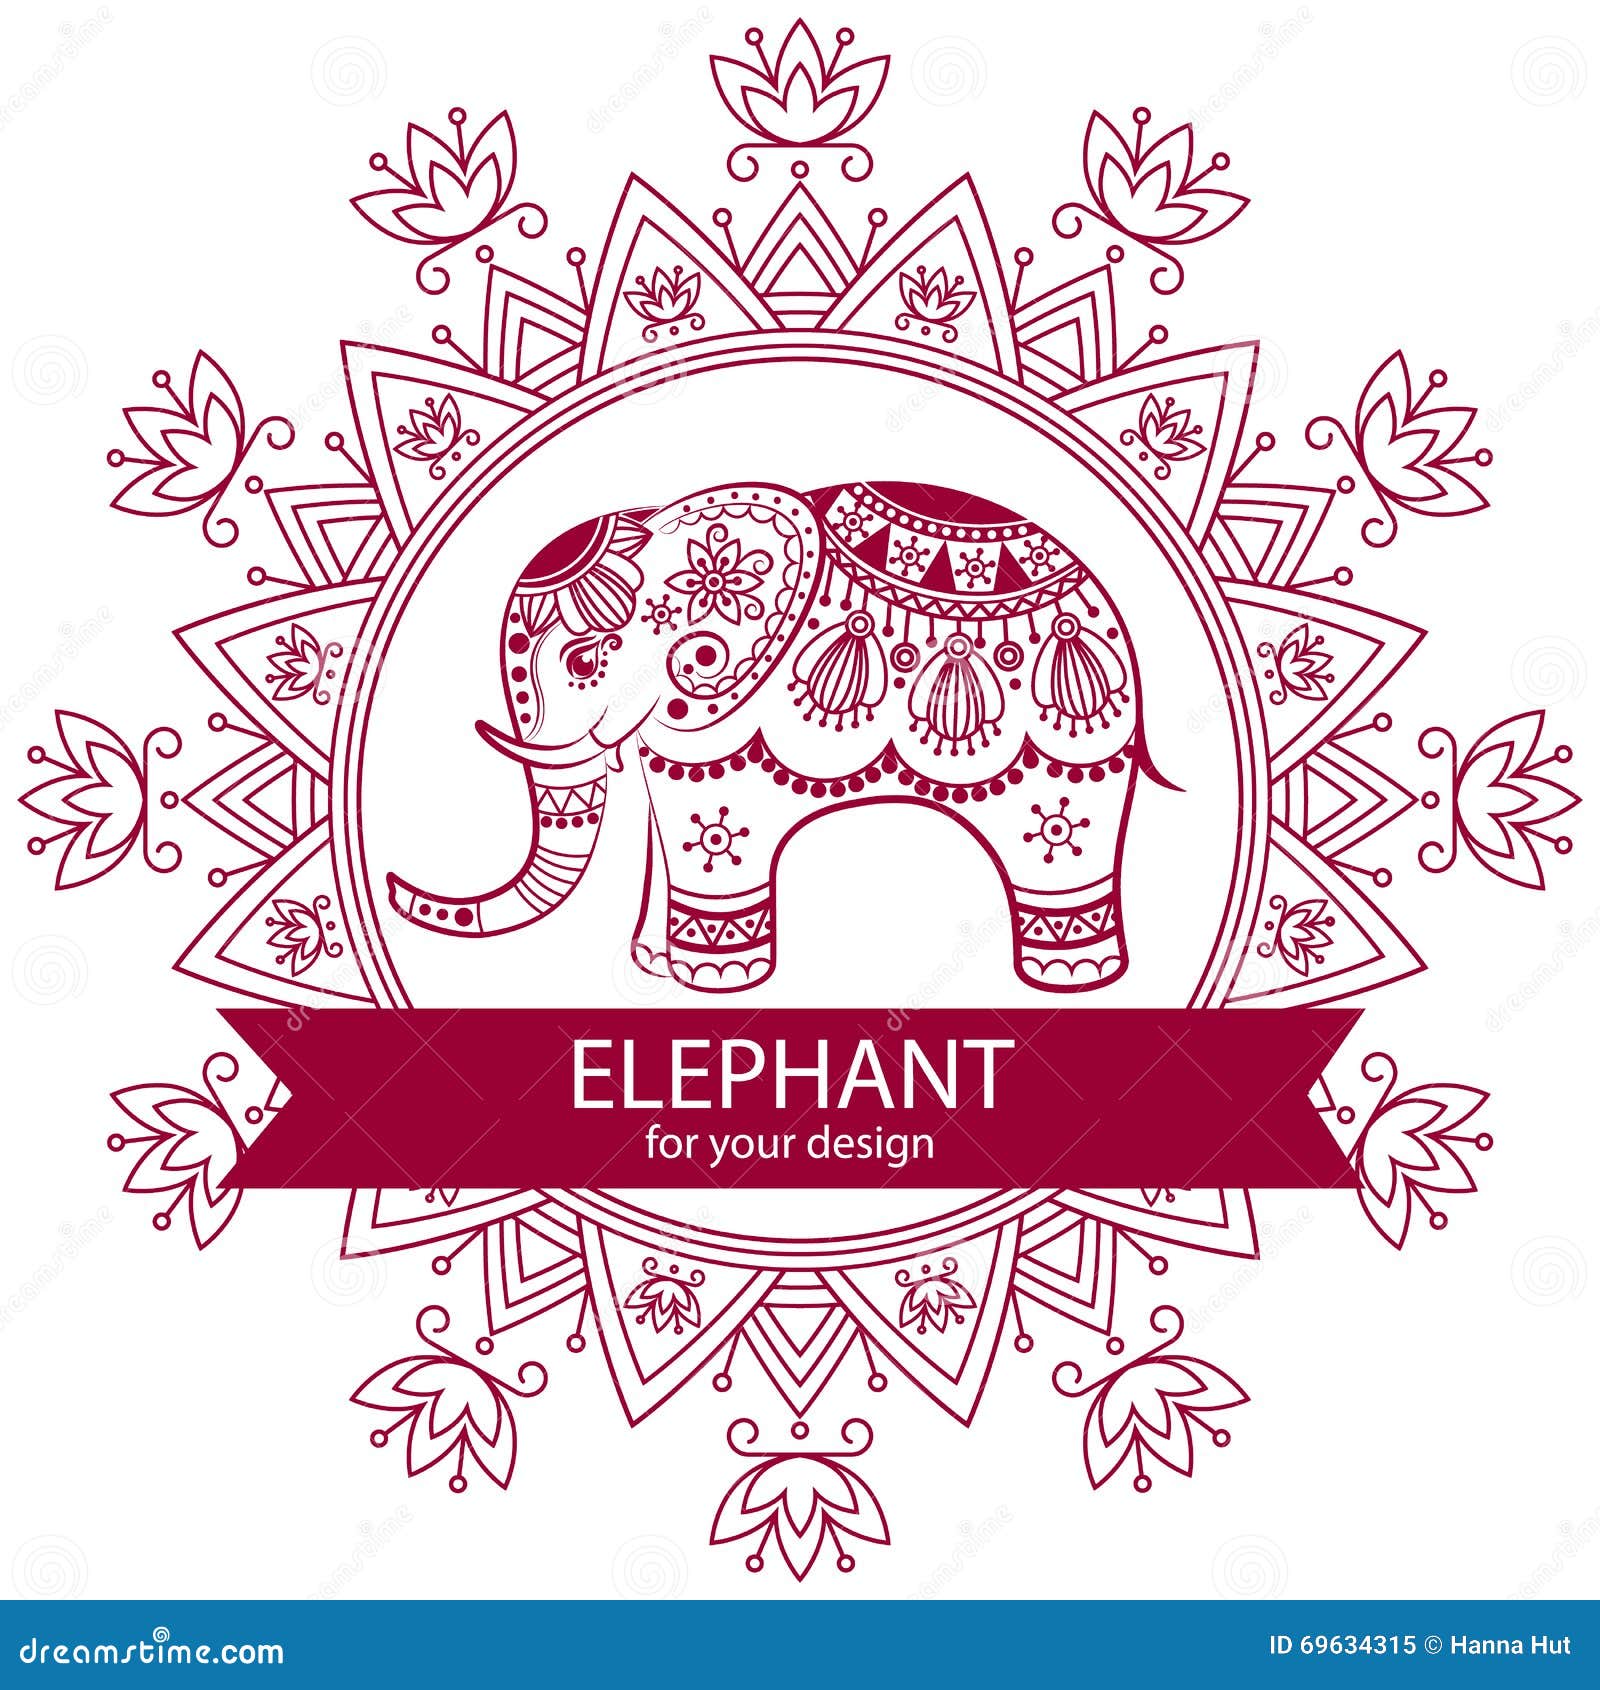 Elephant Home Decor: 50 Elephant Figurines & Home Accessories